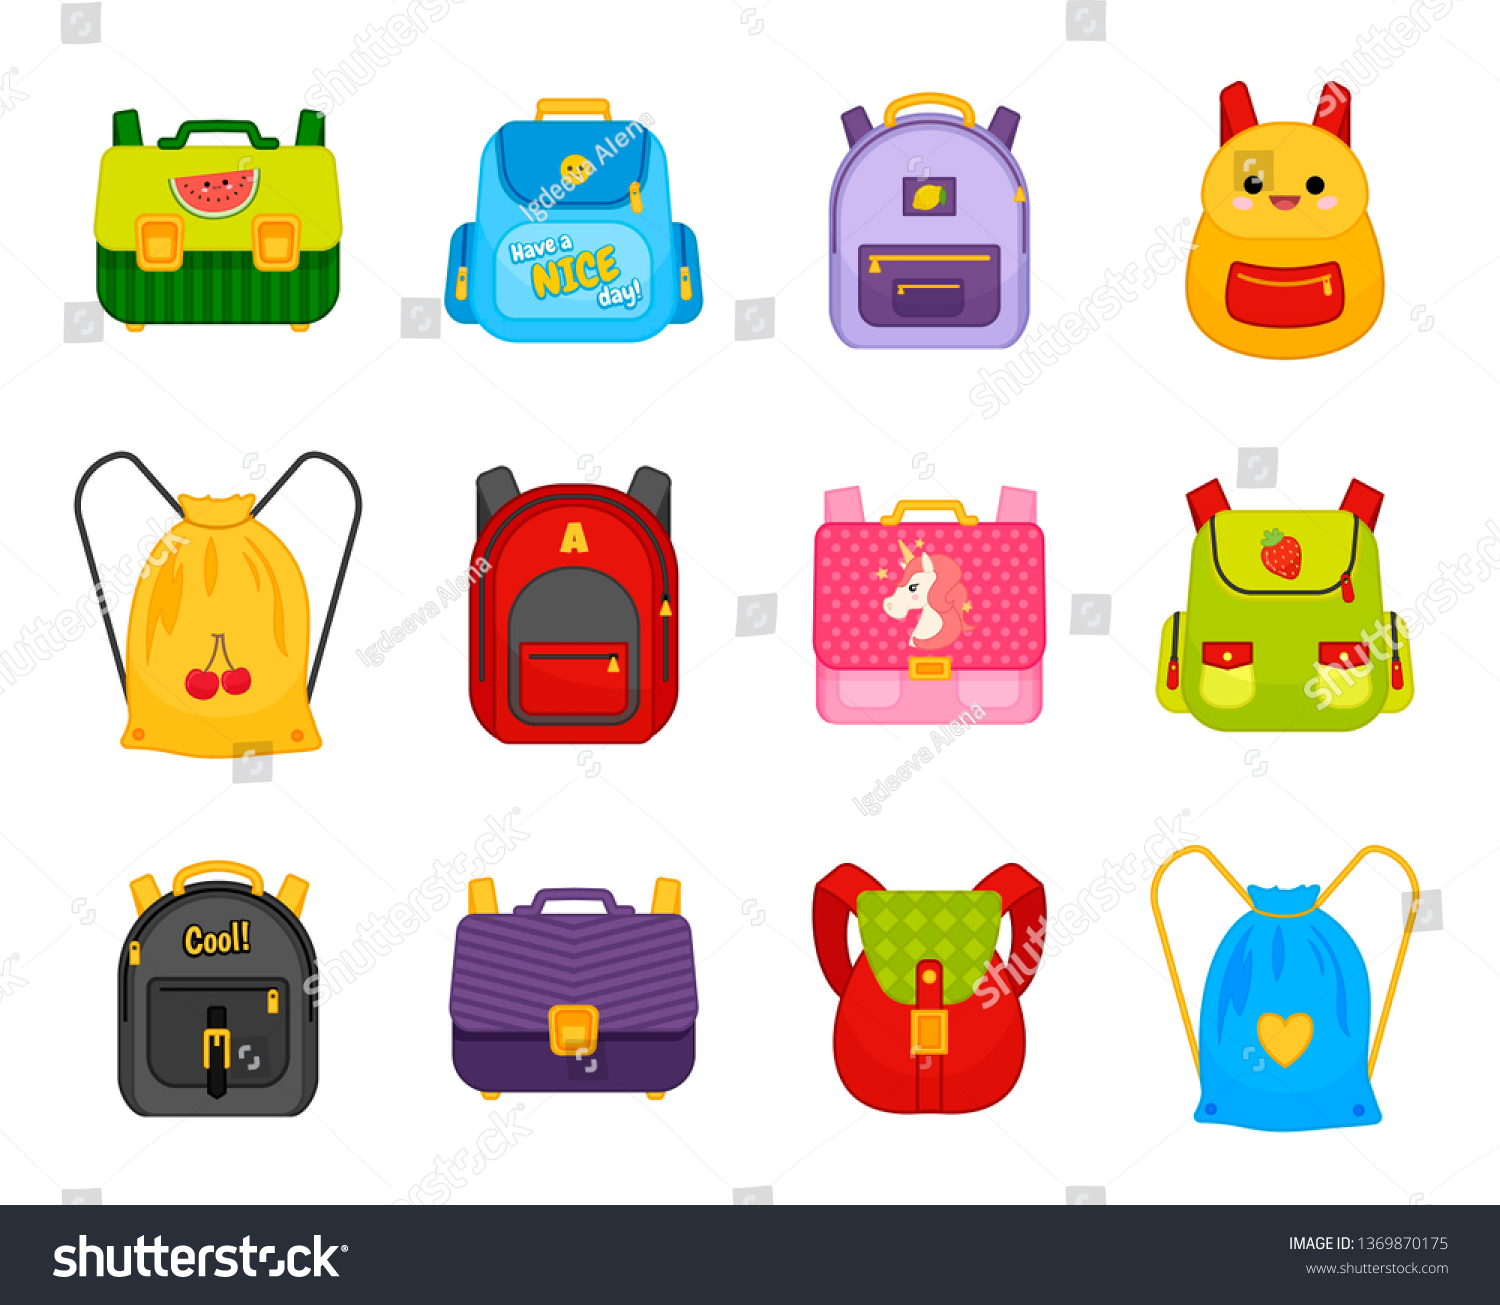 58,745 Kids bags Stock Vectors, Images & Vector Art | Shutterstock